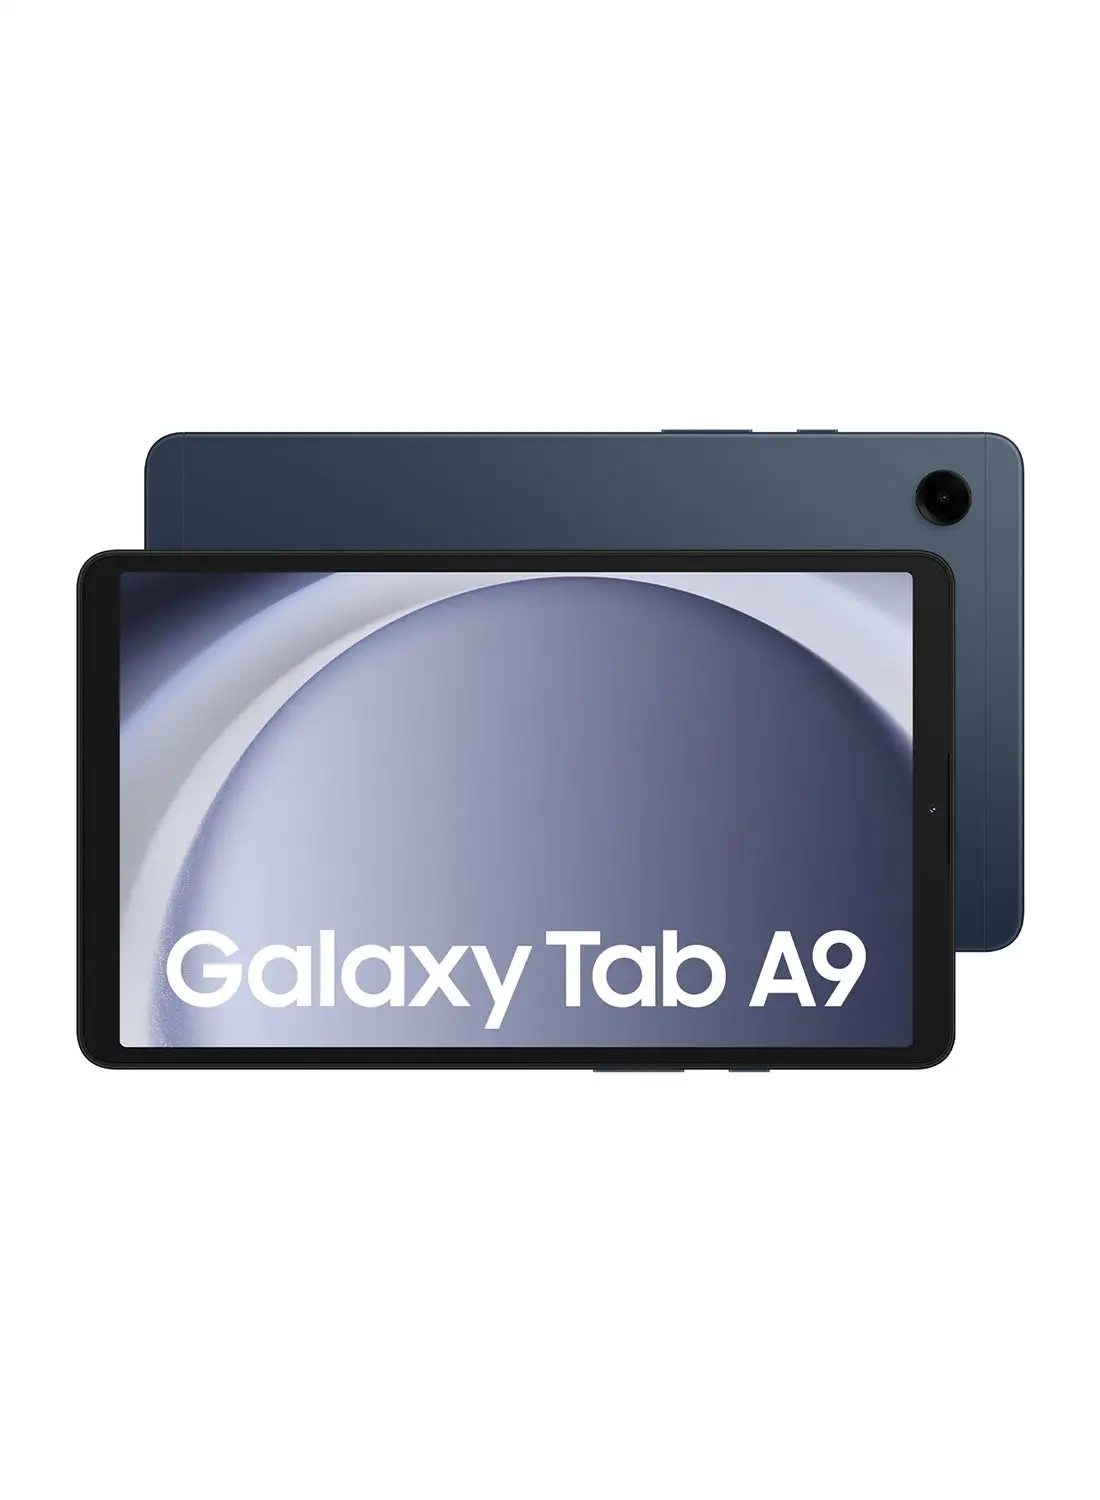 Samsung Galaxy Tab A9 Dark Blue/Navy 4GB RAM 64GB Wifi - Middle East Version